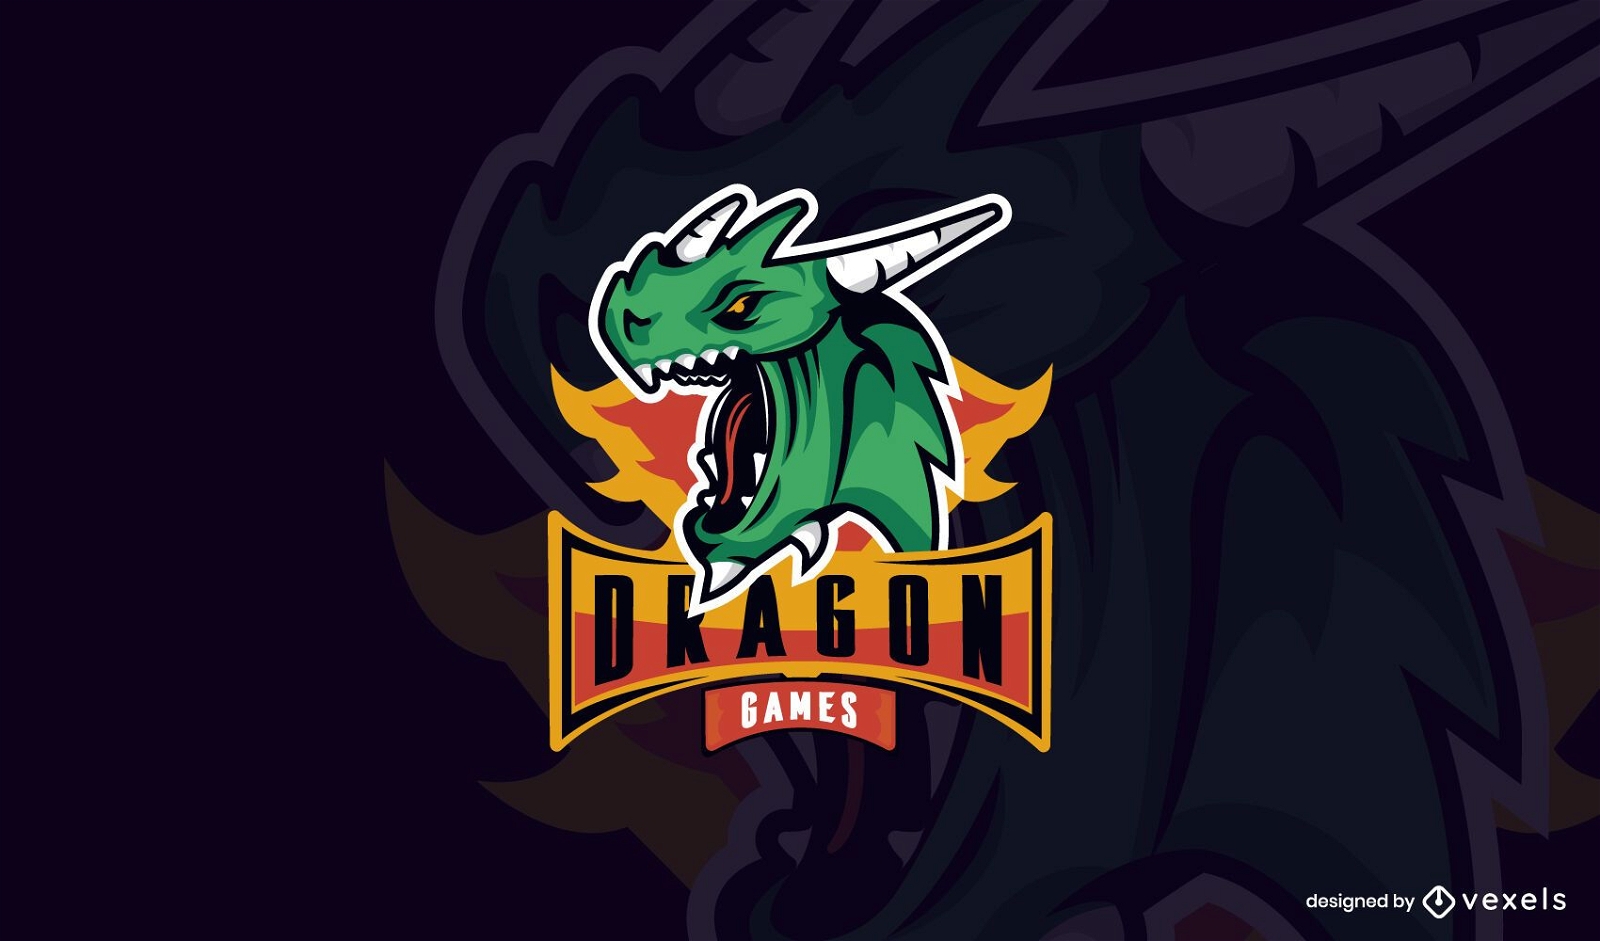 Plantilla de logotipo de juegos de dragón